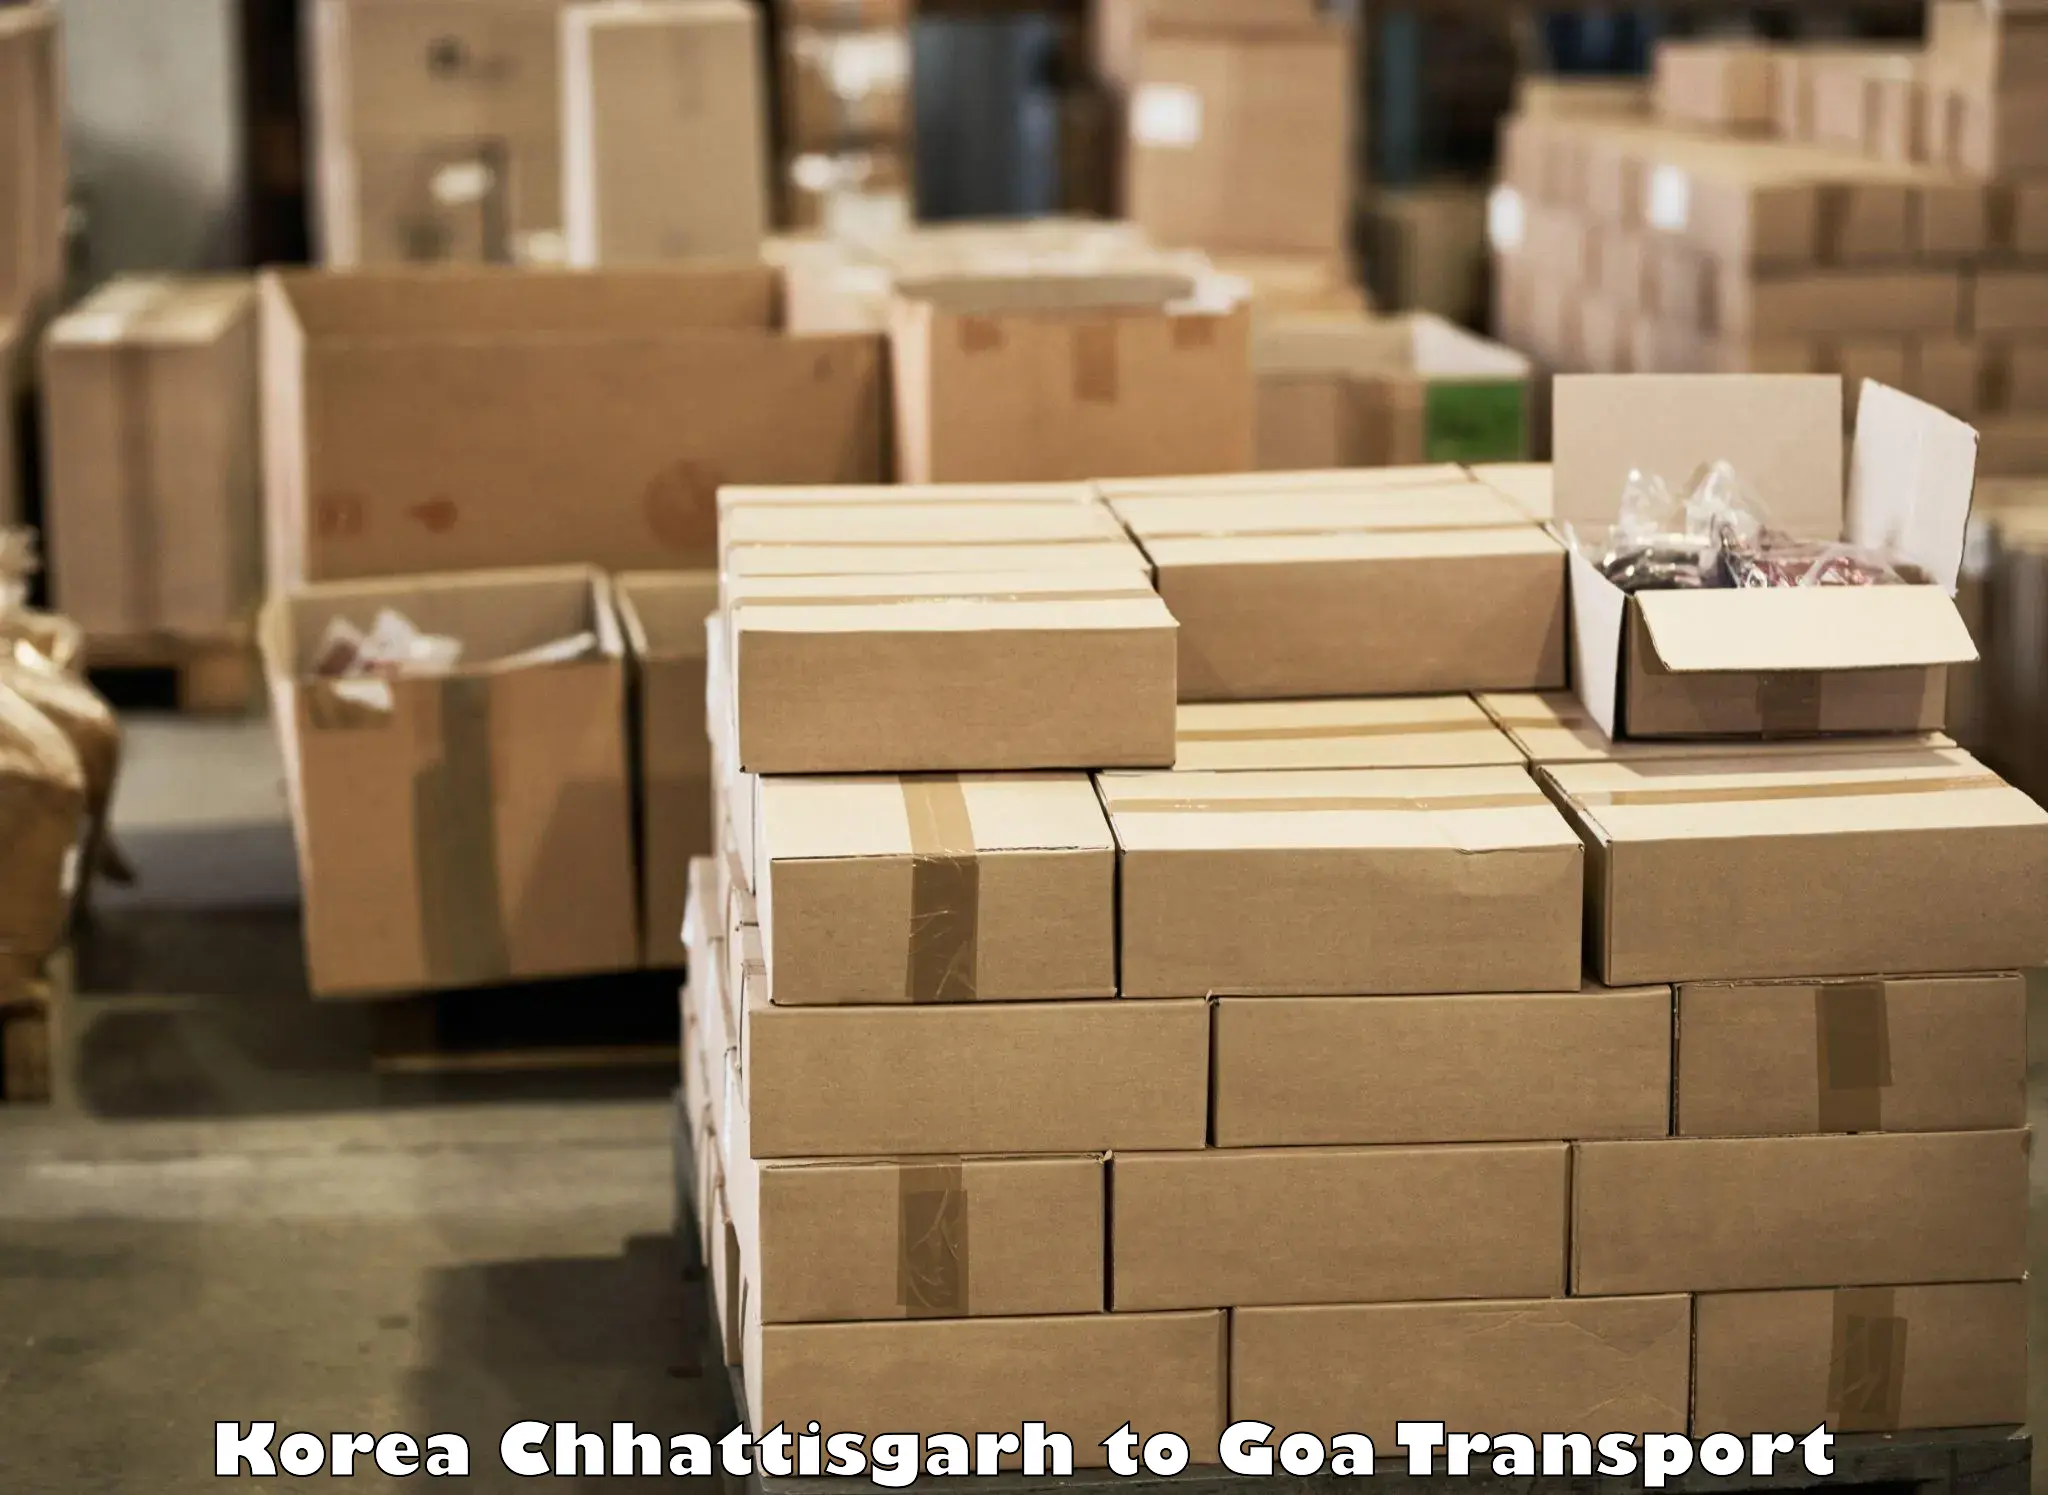 Intercity goods transport Korea Chhattisgarh to IIT Goa